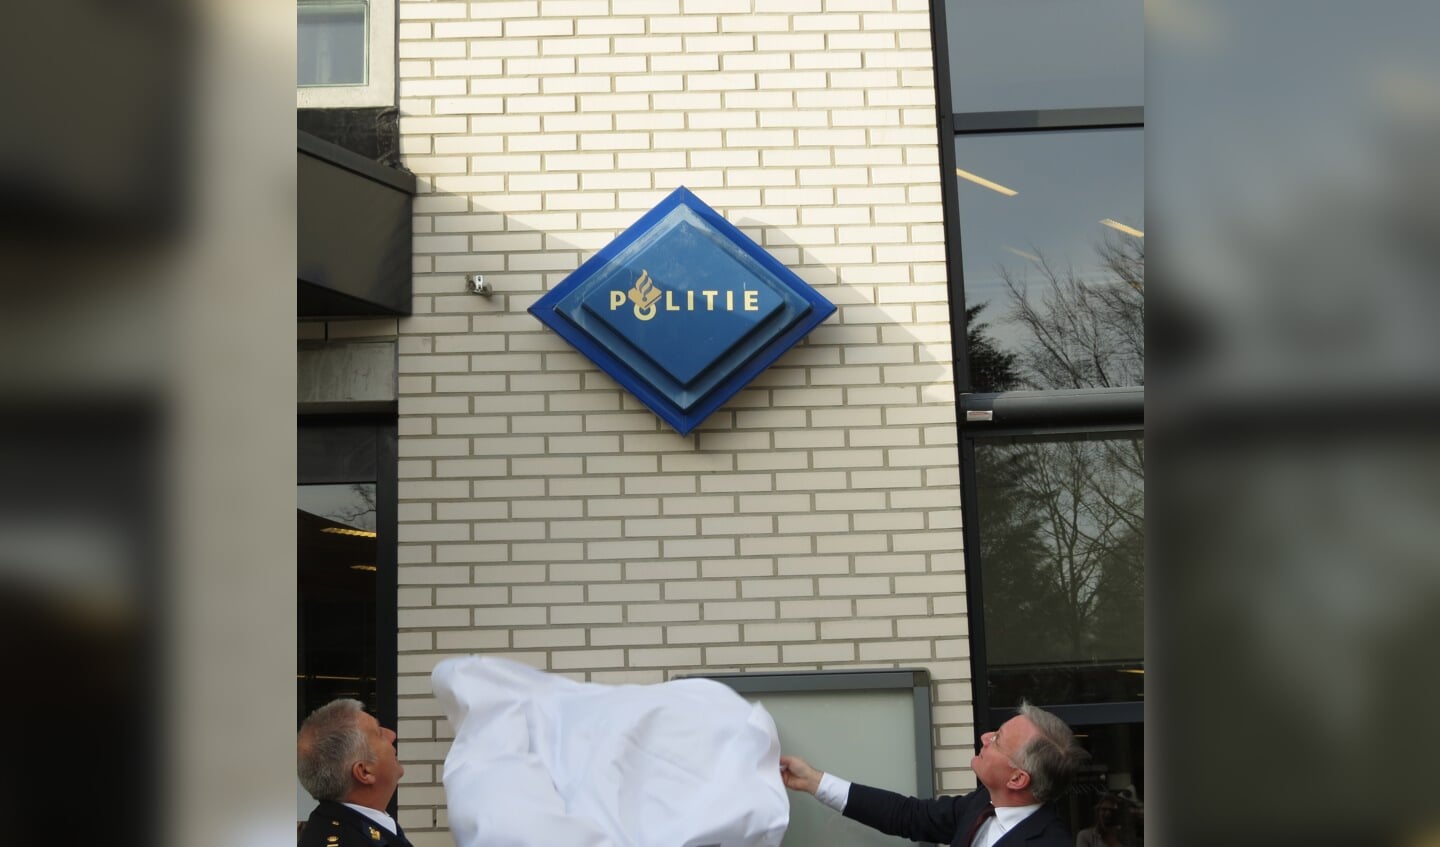  Met de onthulling van een politielogo door Martin Valenkamp, basisteamchef BES Nationale Politie en burgemeester Arjen Gerritsen werd de nieuwe locatie in gebruik genomen.